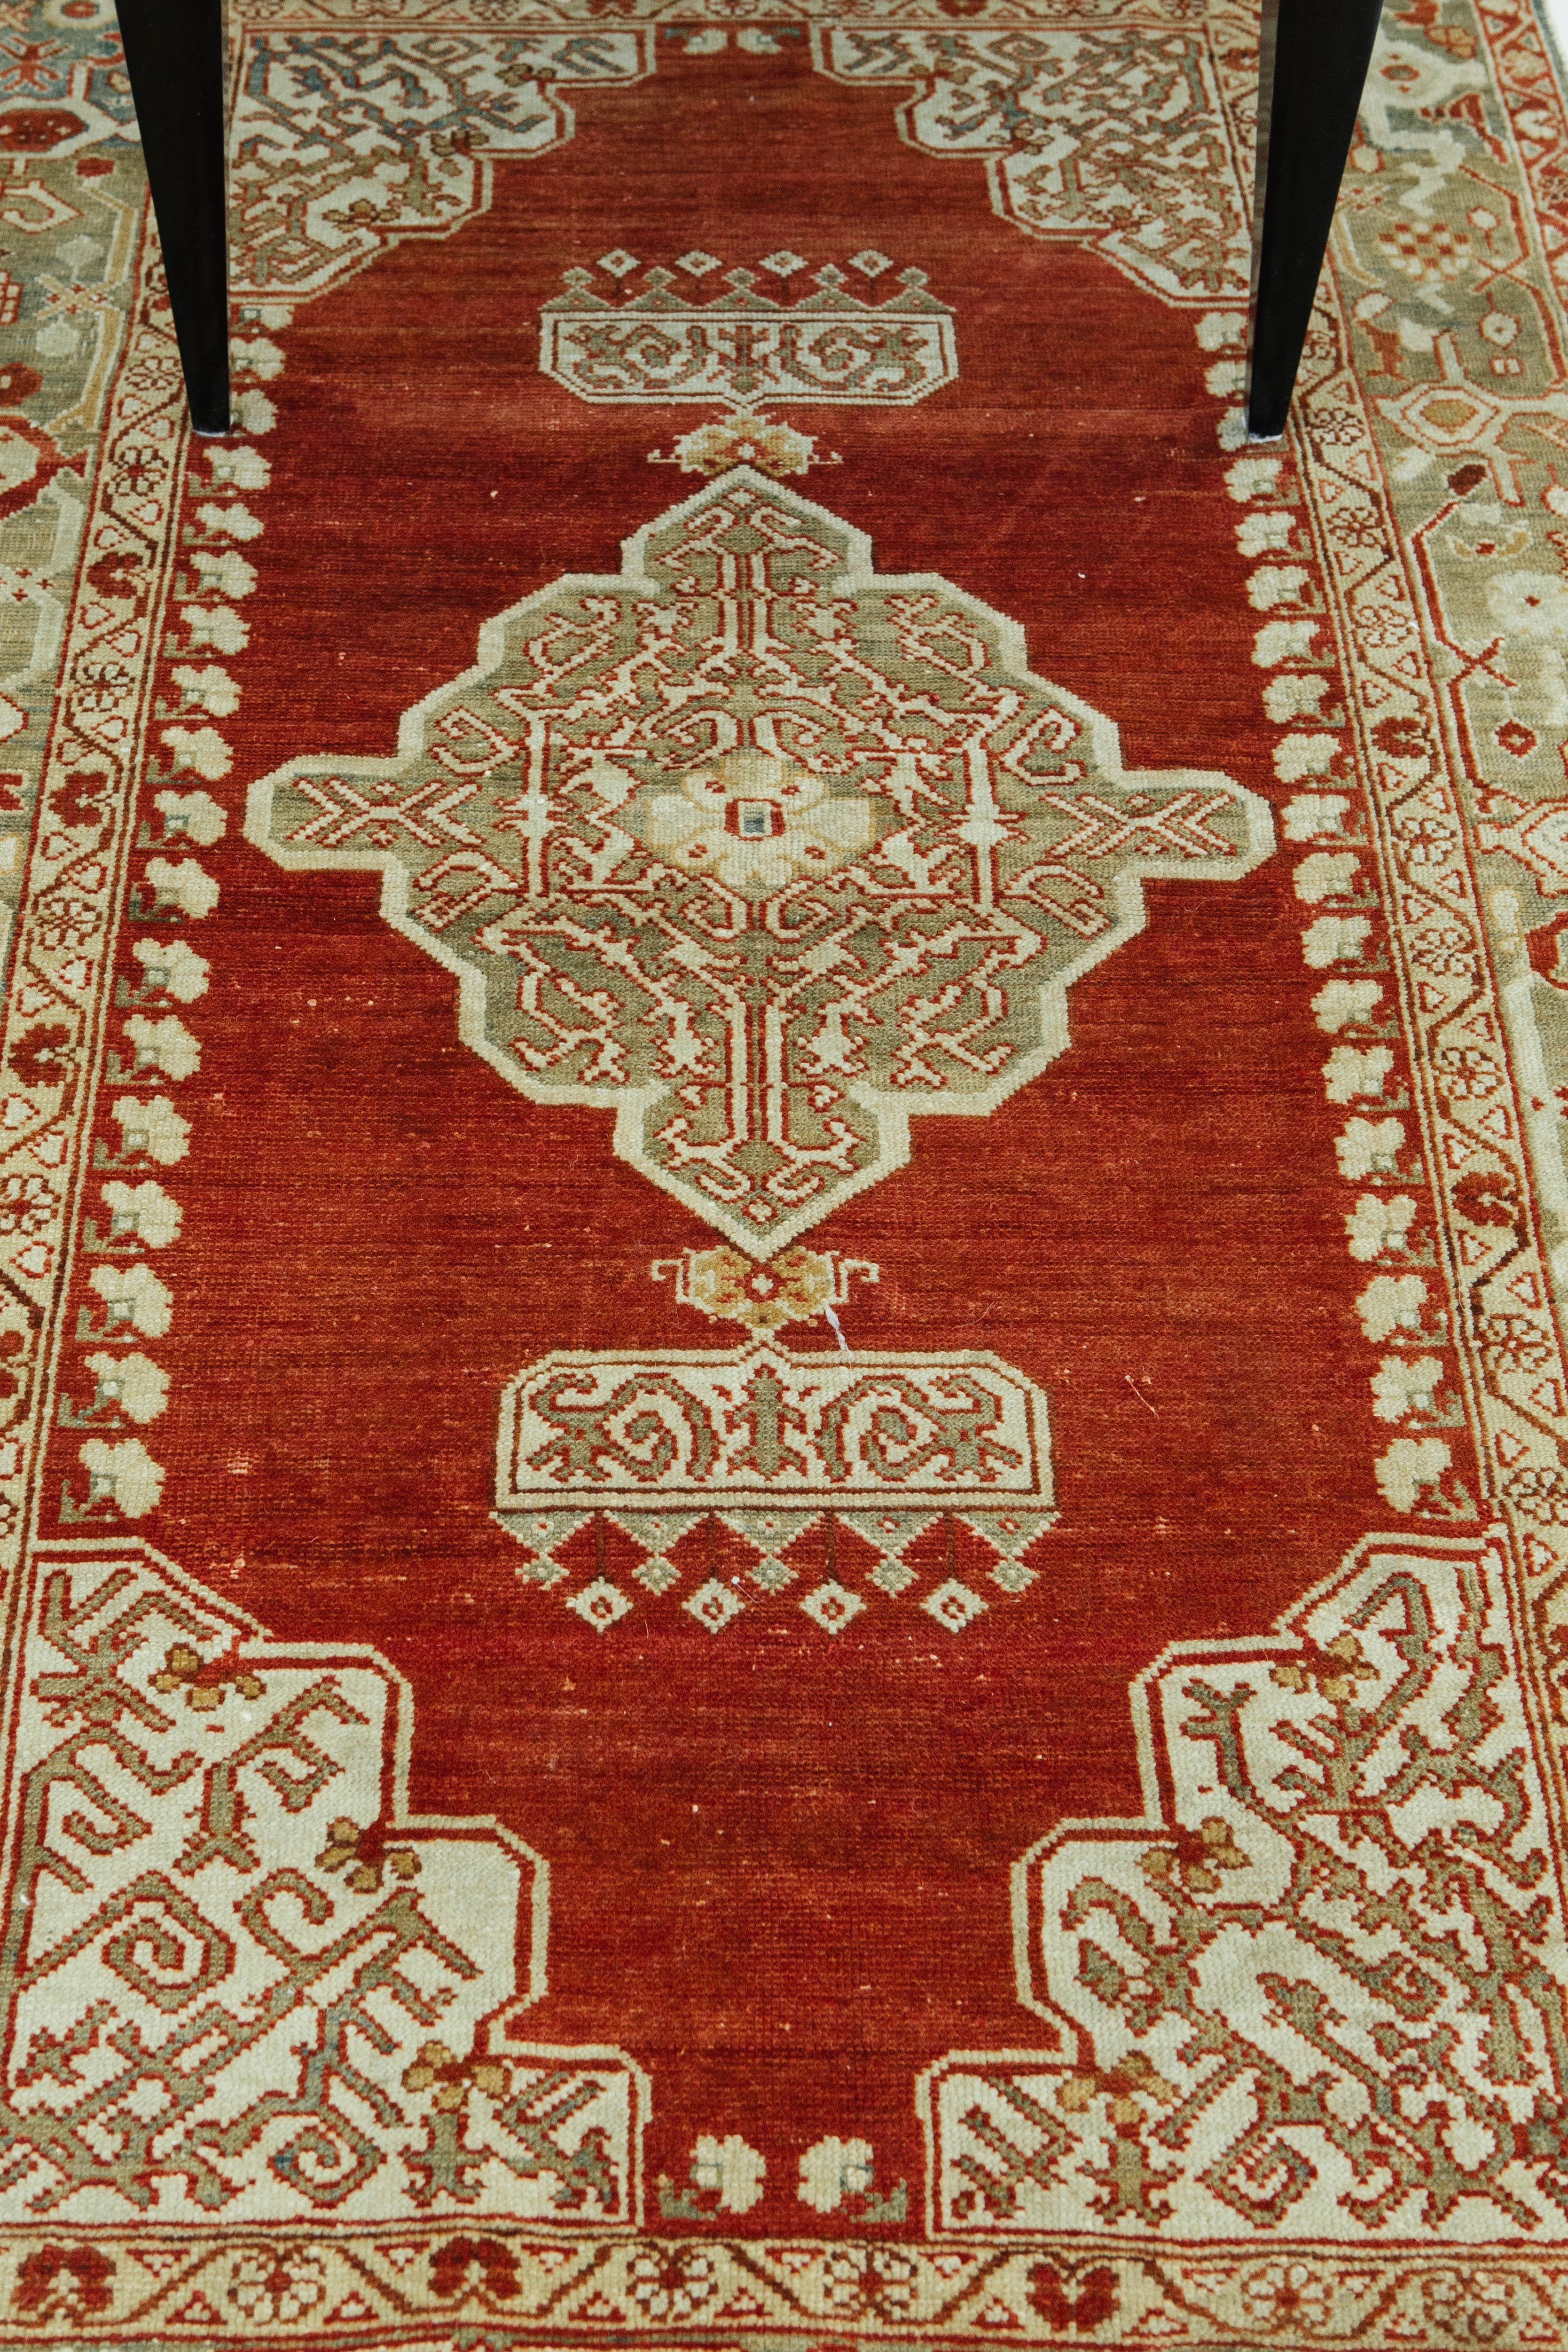 Ein kühner und luxuriöser türkischer Teppich aus Anatolien im Vintage-Stil. Dieses Stück hat ein schönes kirschrotes Feld mit goldenen Motiven, die die Aufmerksamkeit auf sich ziehen und bleibende Eindrücke hinterlassen. Es zeigt traditionelle